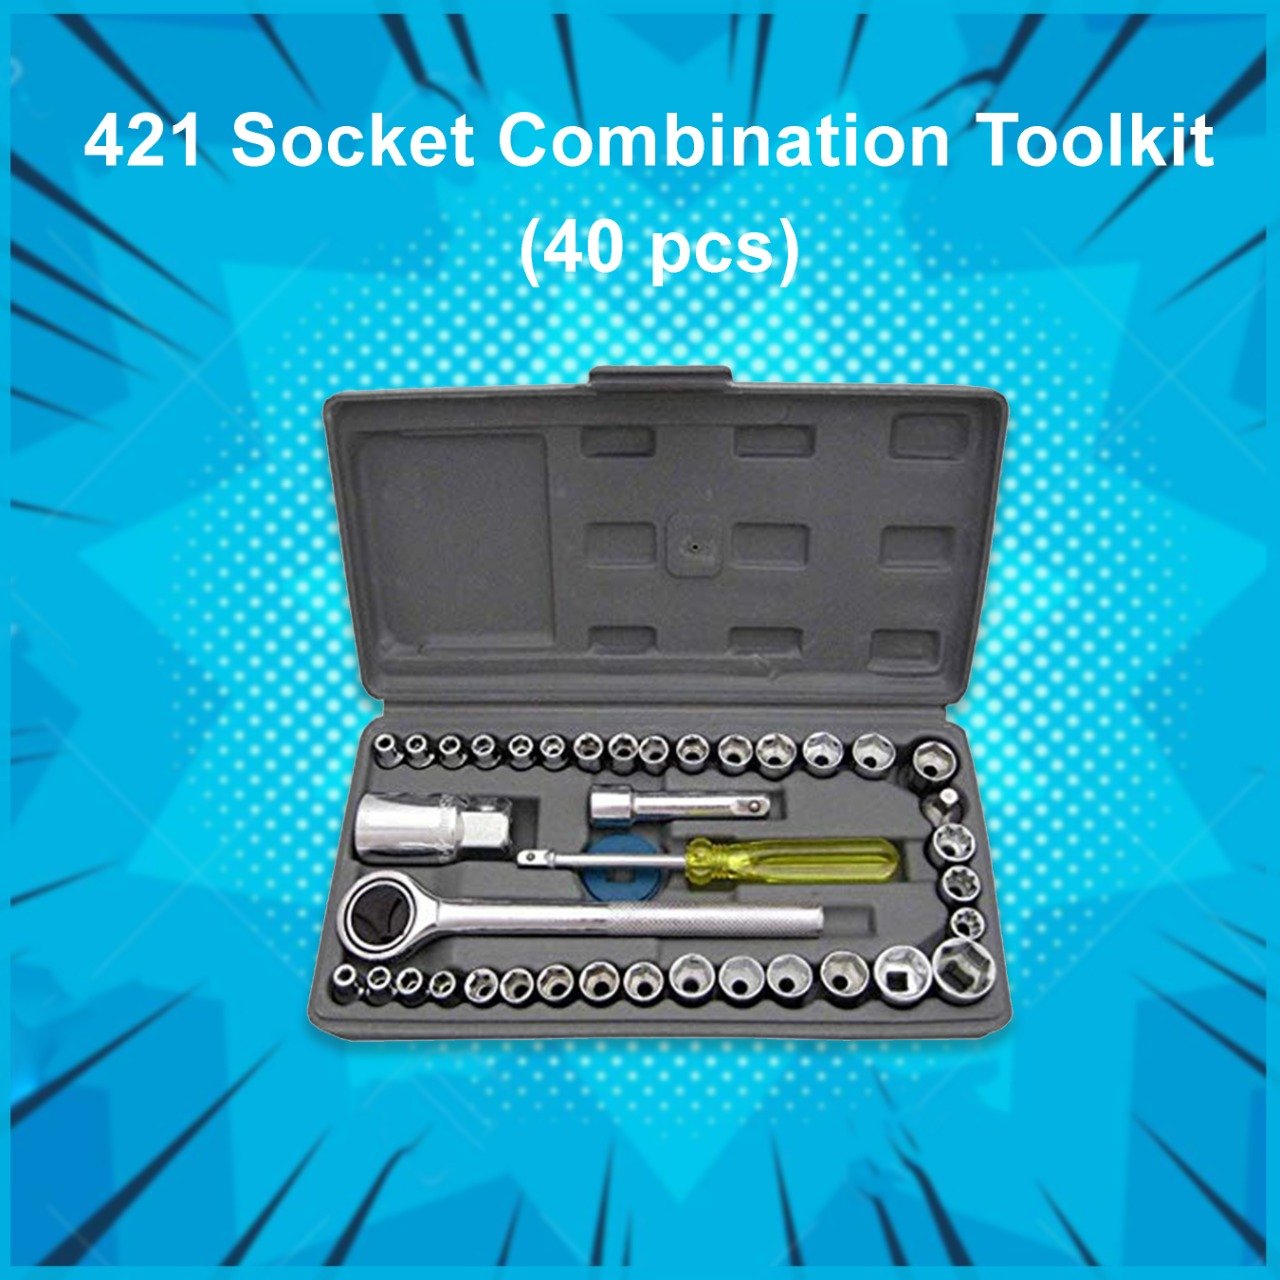 0421 Socket Combination Toolkit (40 pcs) - SkyShopy